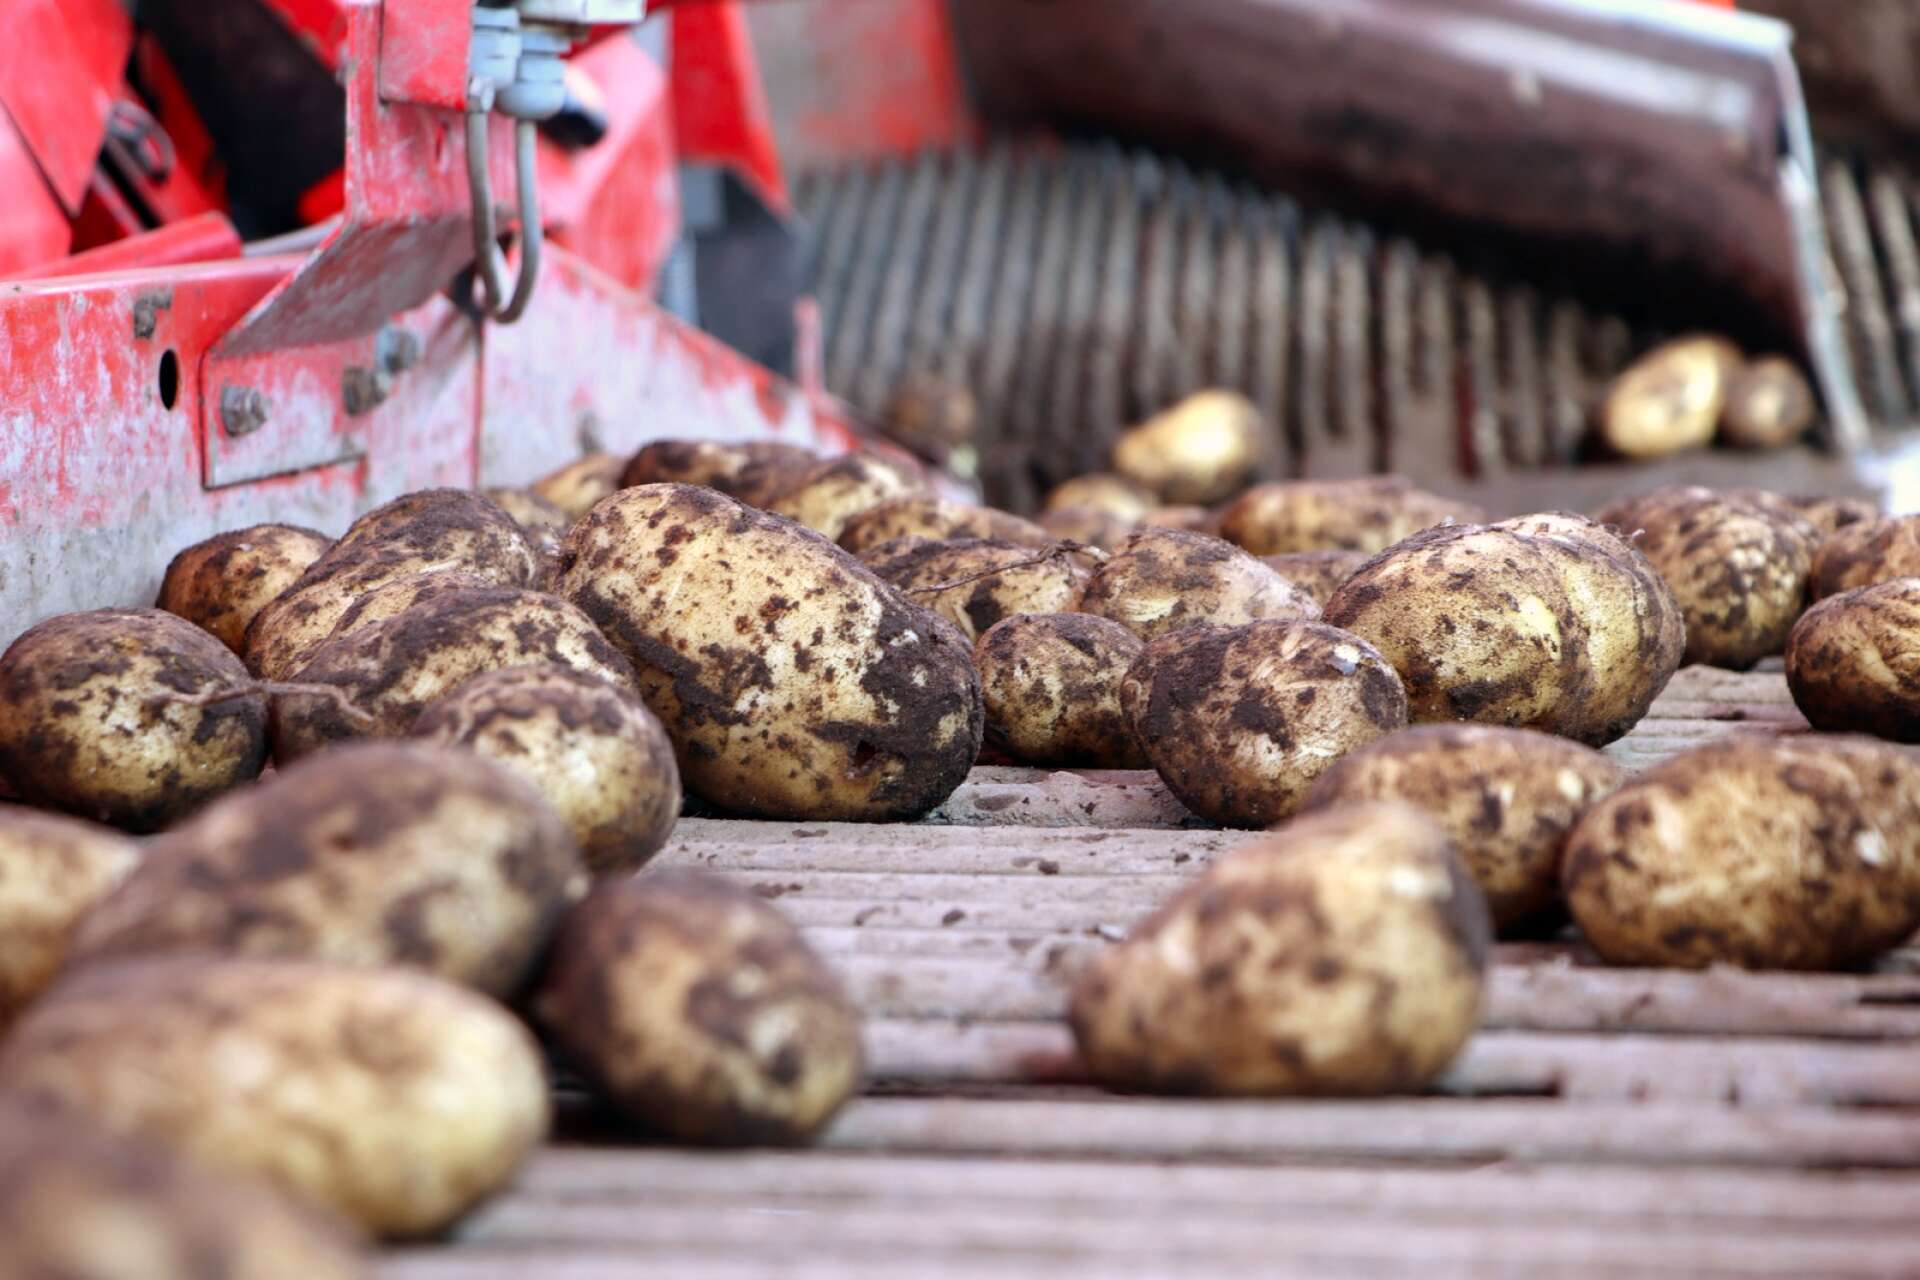 Potatisen säljer han hemmavid, på olika marknader i närområdet och på torget i Tibro.